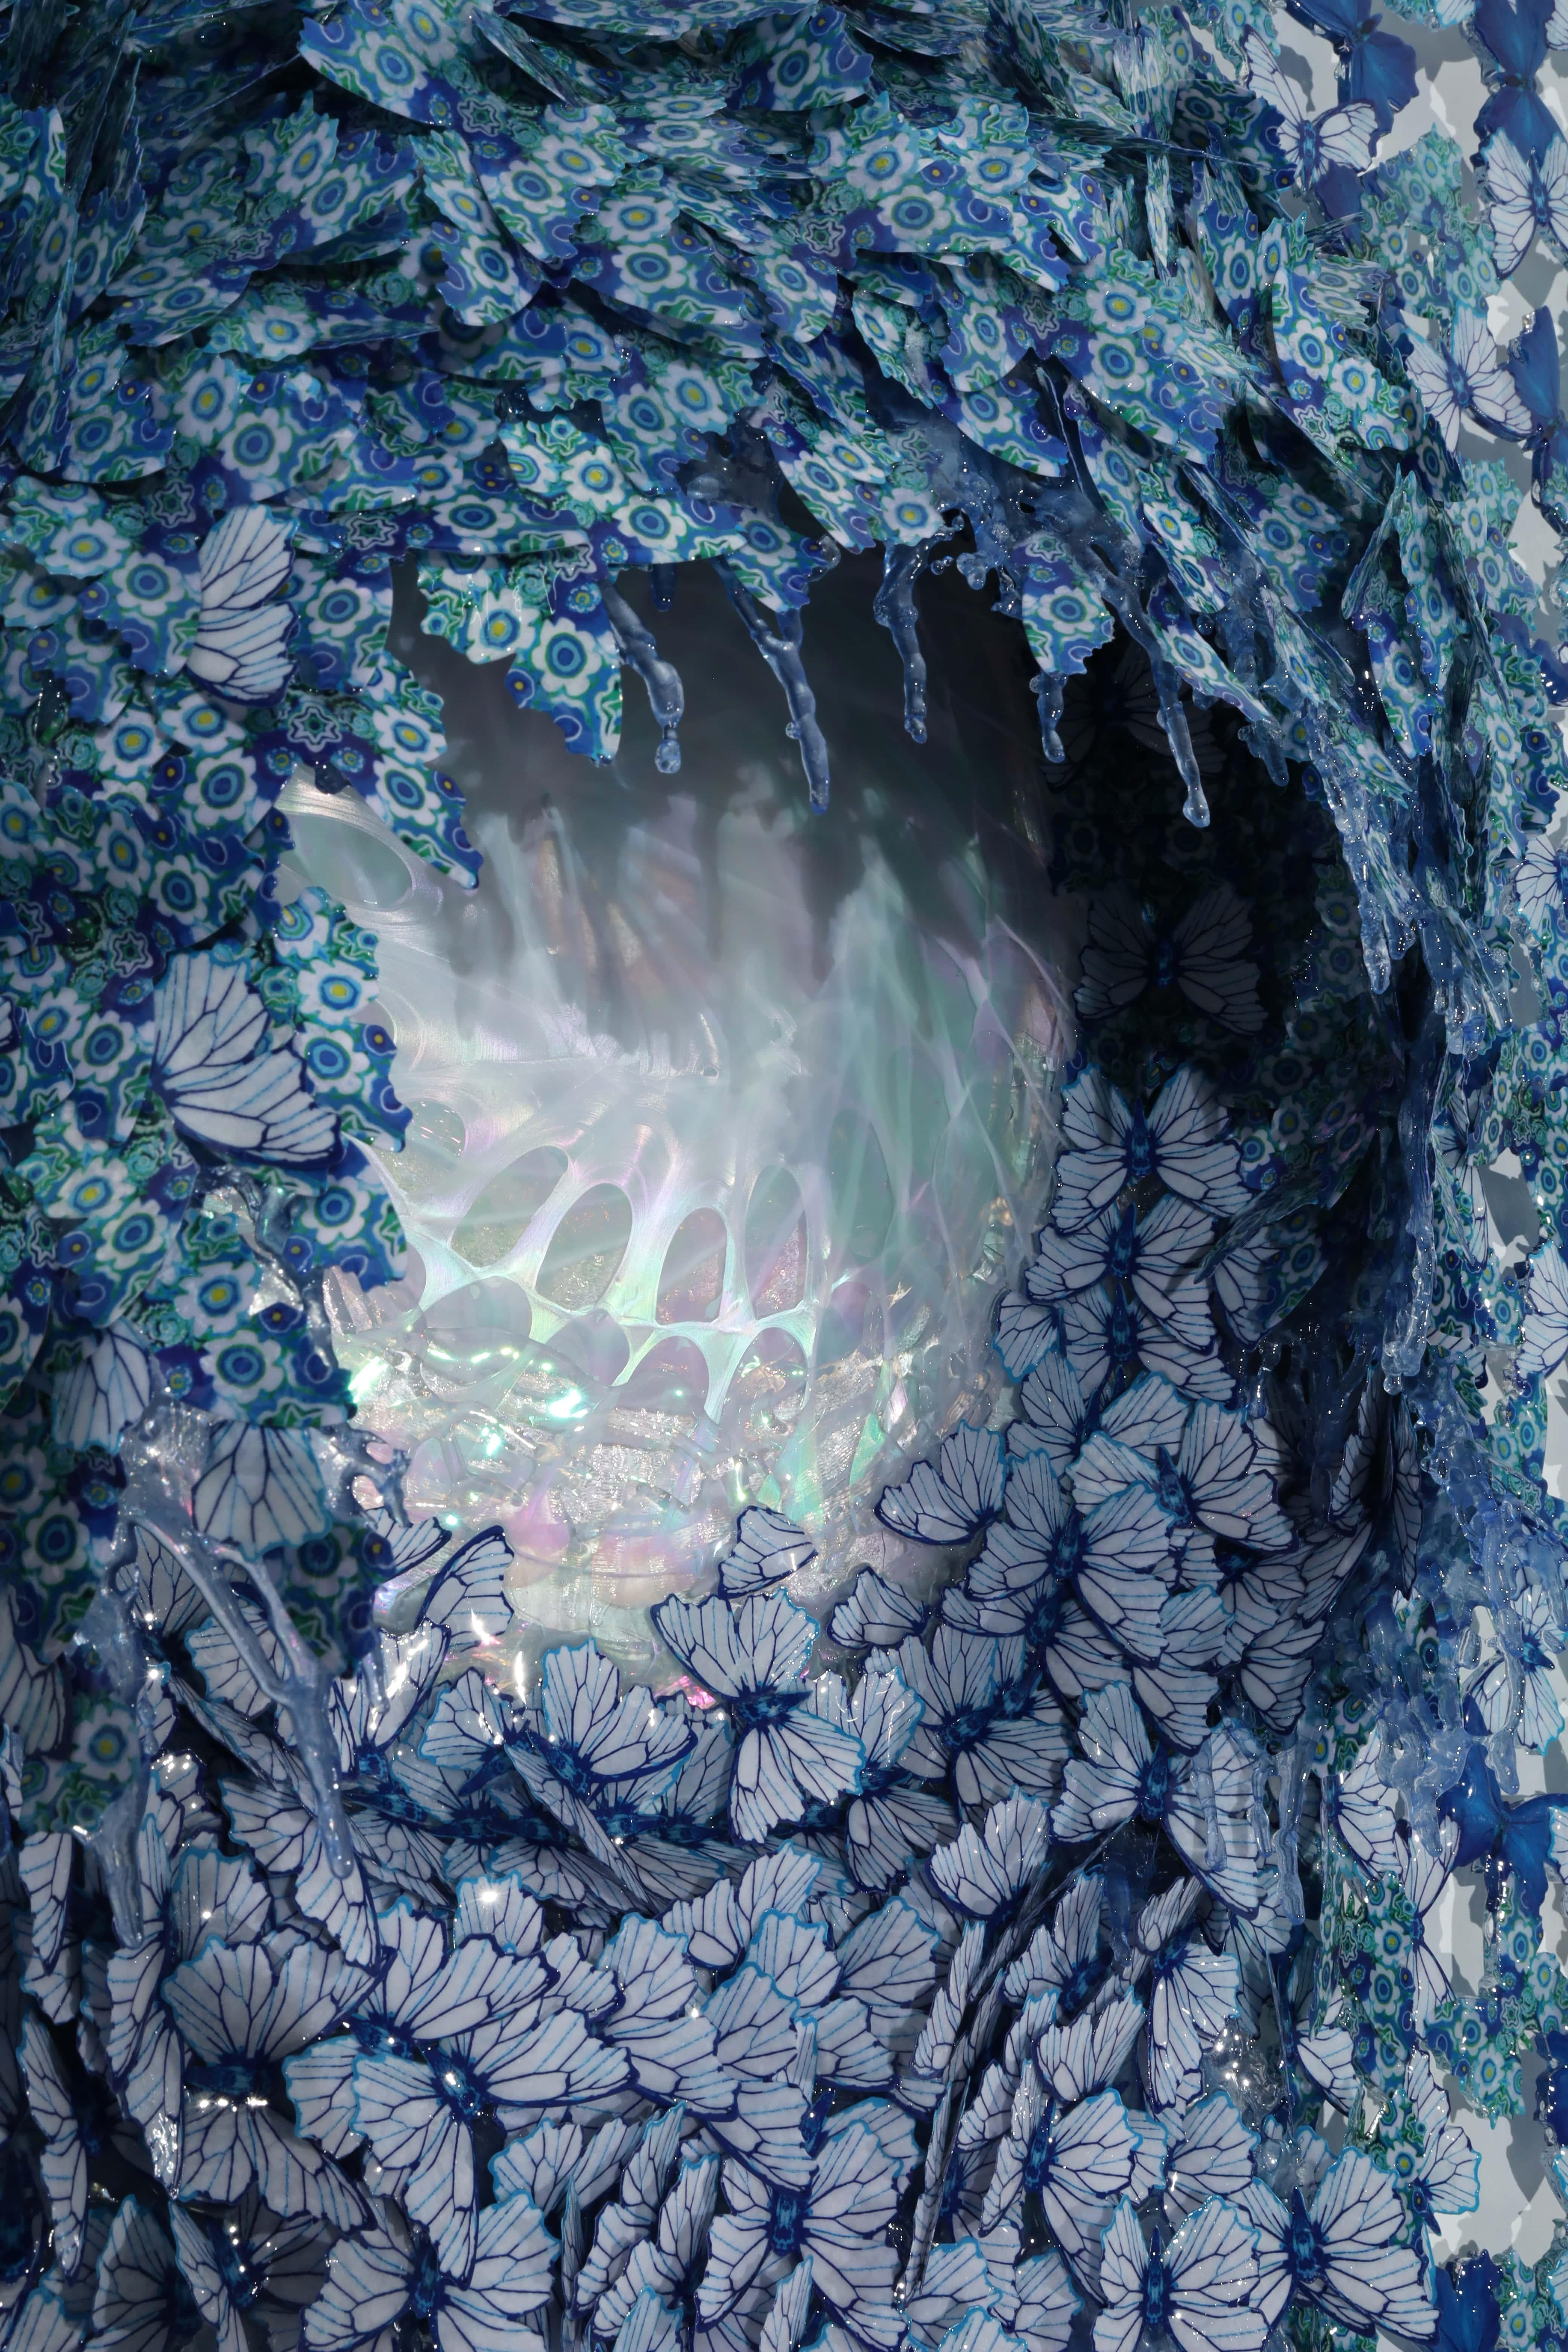 Les sculptures oniriques de l'artiste italienne Annalù Brilliante enchantent les spectateurs avec des éclaboussures d'eau hyperréalistes et des couleurs éclatantes. Née à Venise en 1976, l'artiste a travaillé pendant des années pour développer son